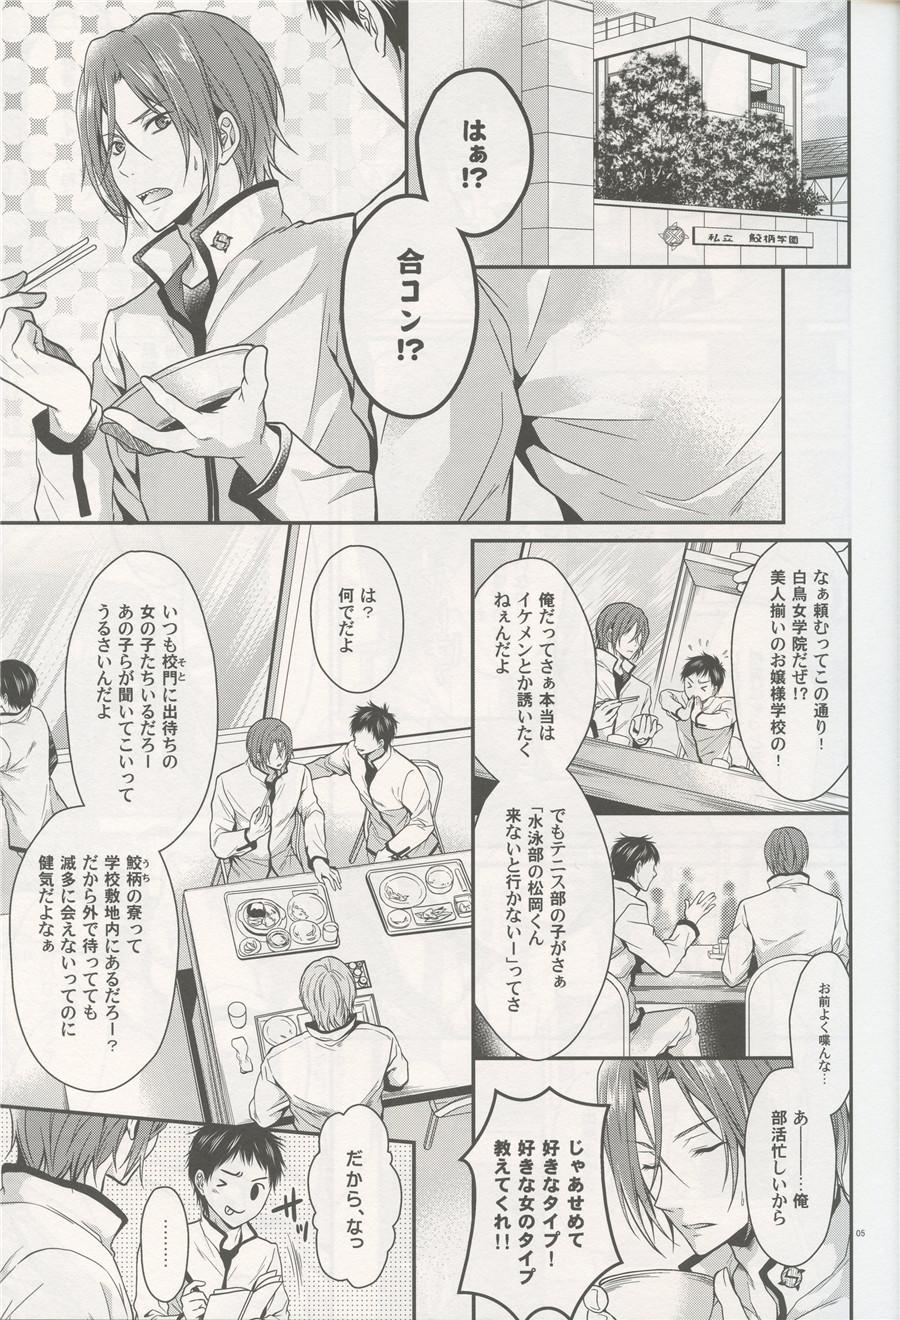 Viet Aitsu no Yome Skill ga Takasugirundaga. - Free Bbw - Page 4